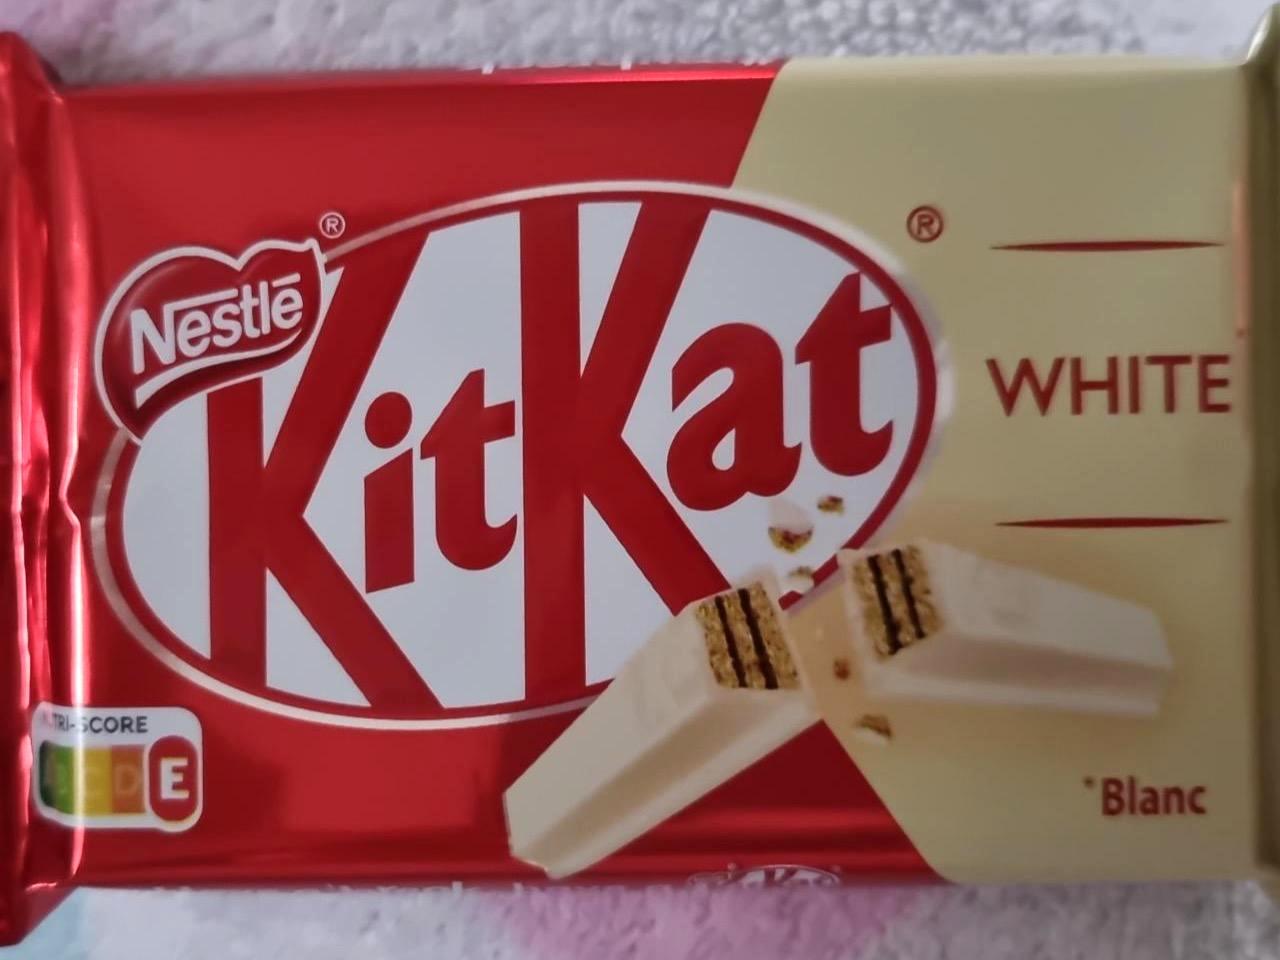 Képek - KitKat white Nestlé